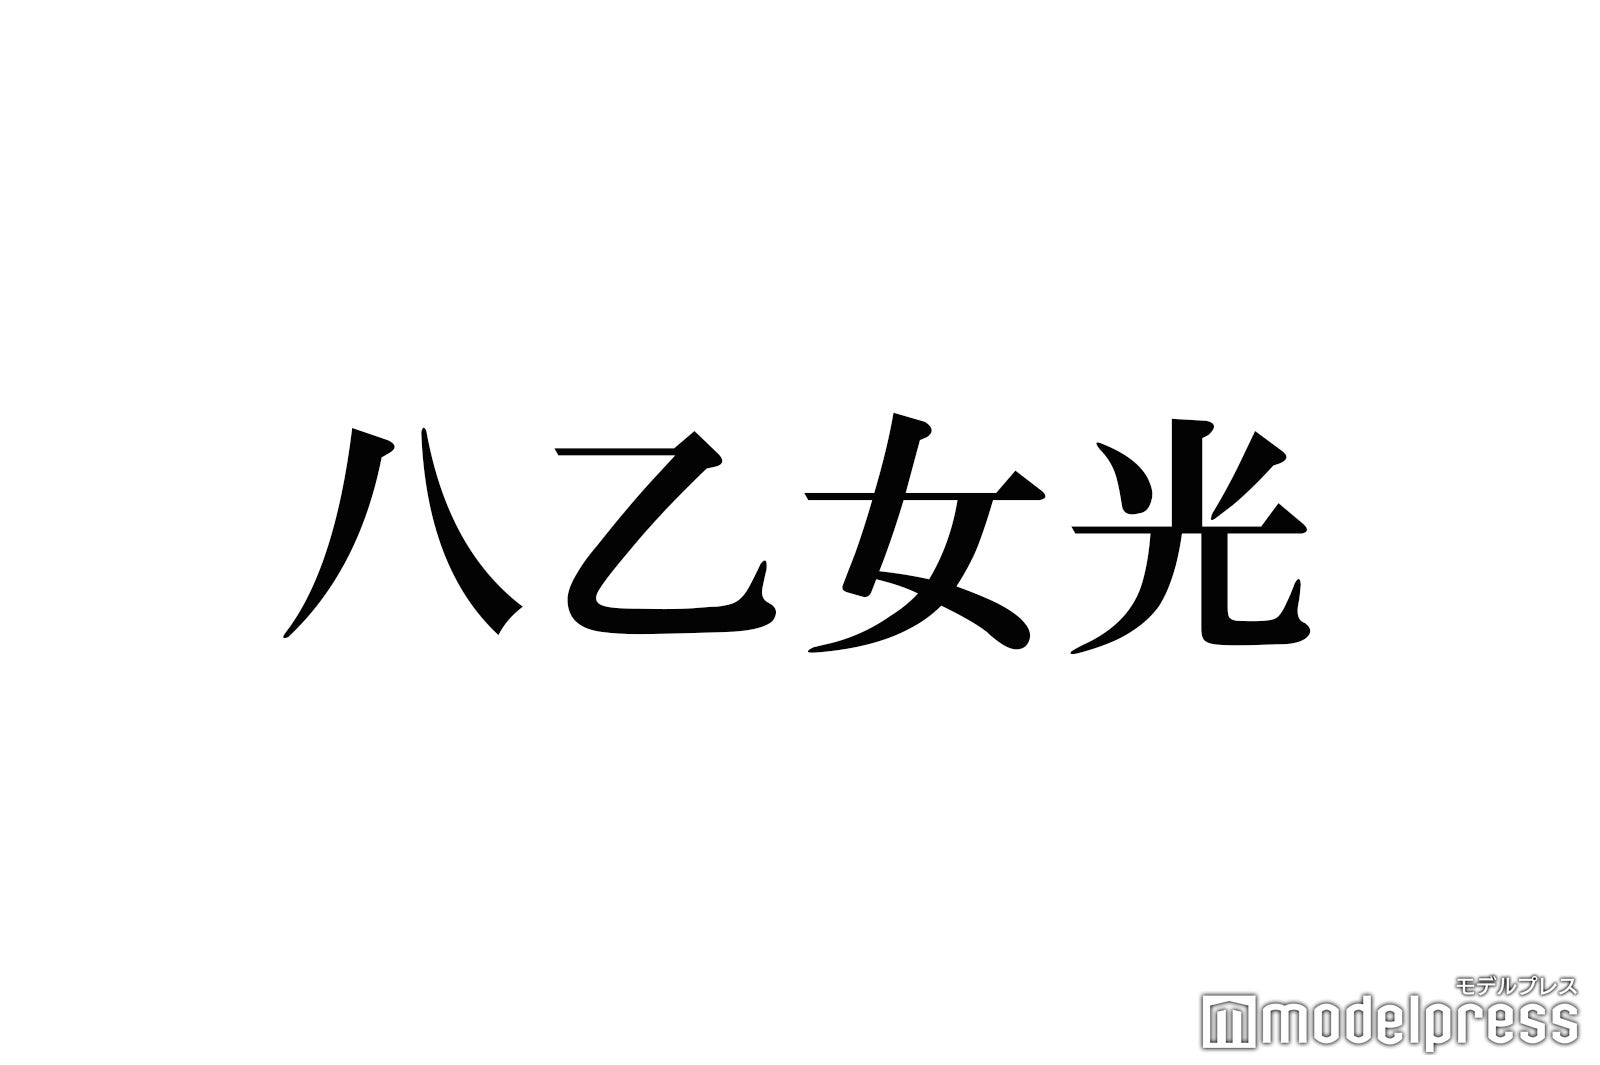 ヒルナンデス 欠席のhey Say Jump八乙女光 生放送復活でファン安堵 モデルプレス